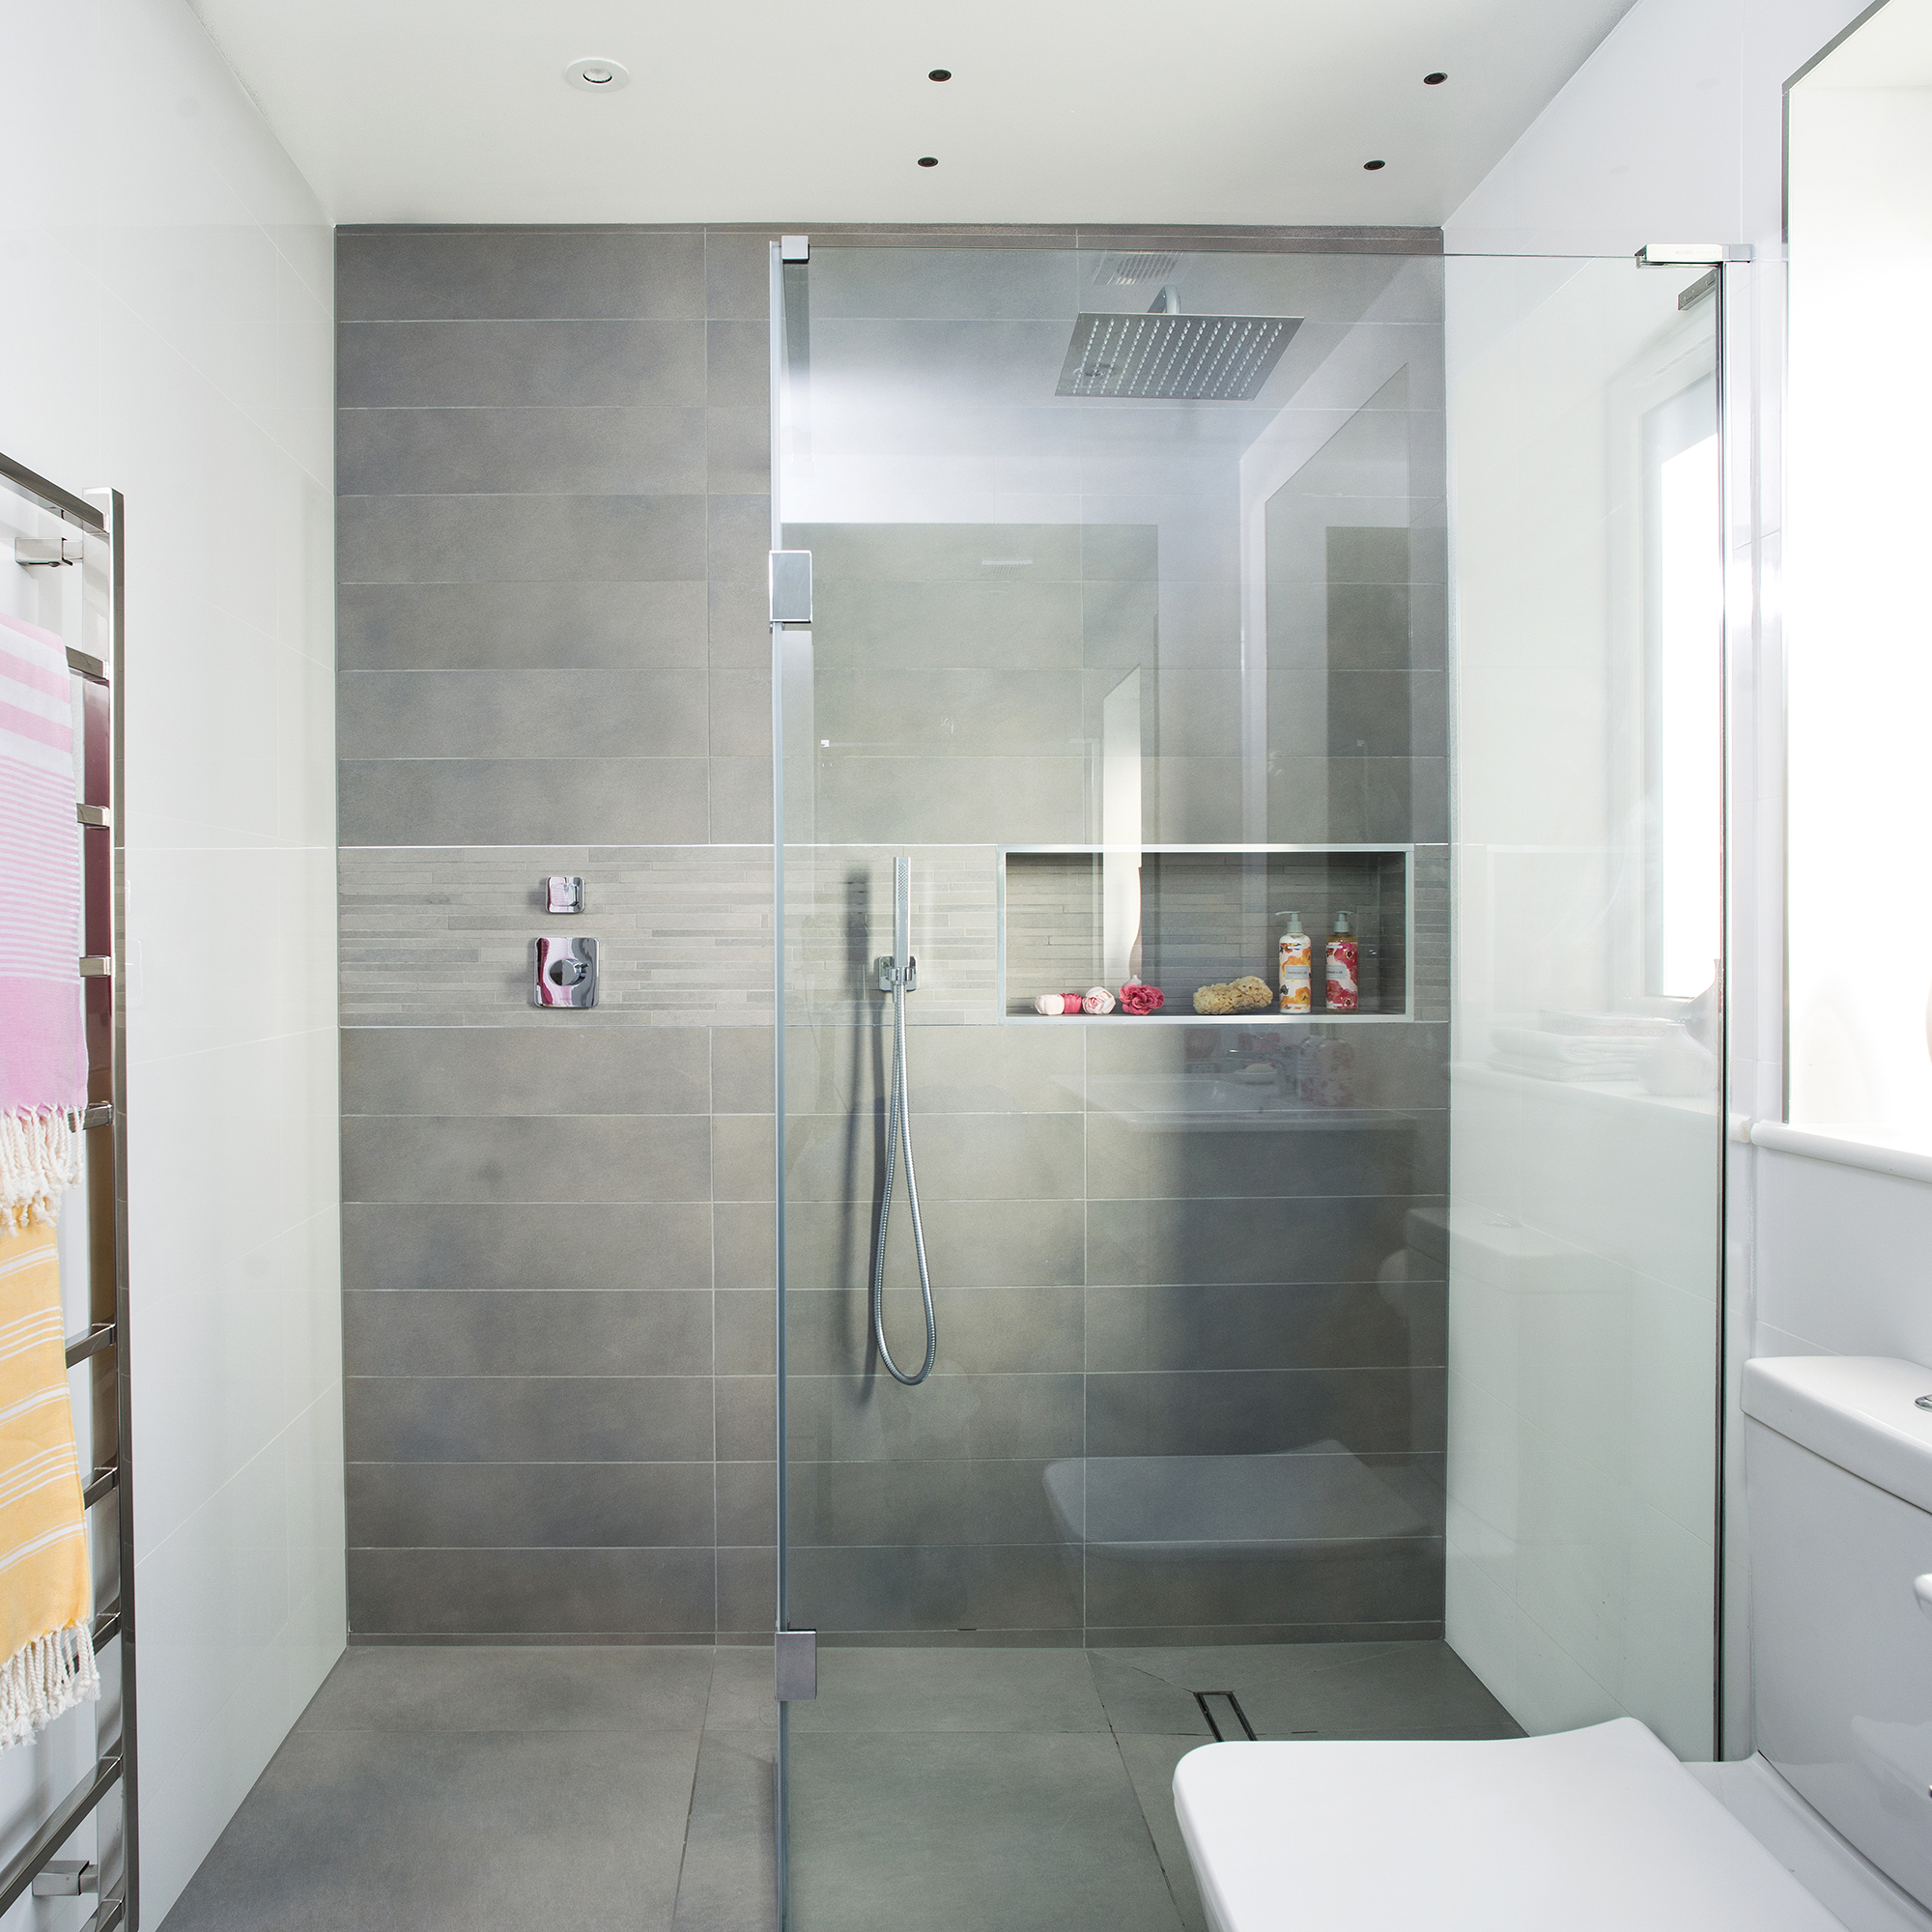 iluminacion en duchas: cuarto de baño moderno con ducha gris y mampara de cristal sin marco